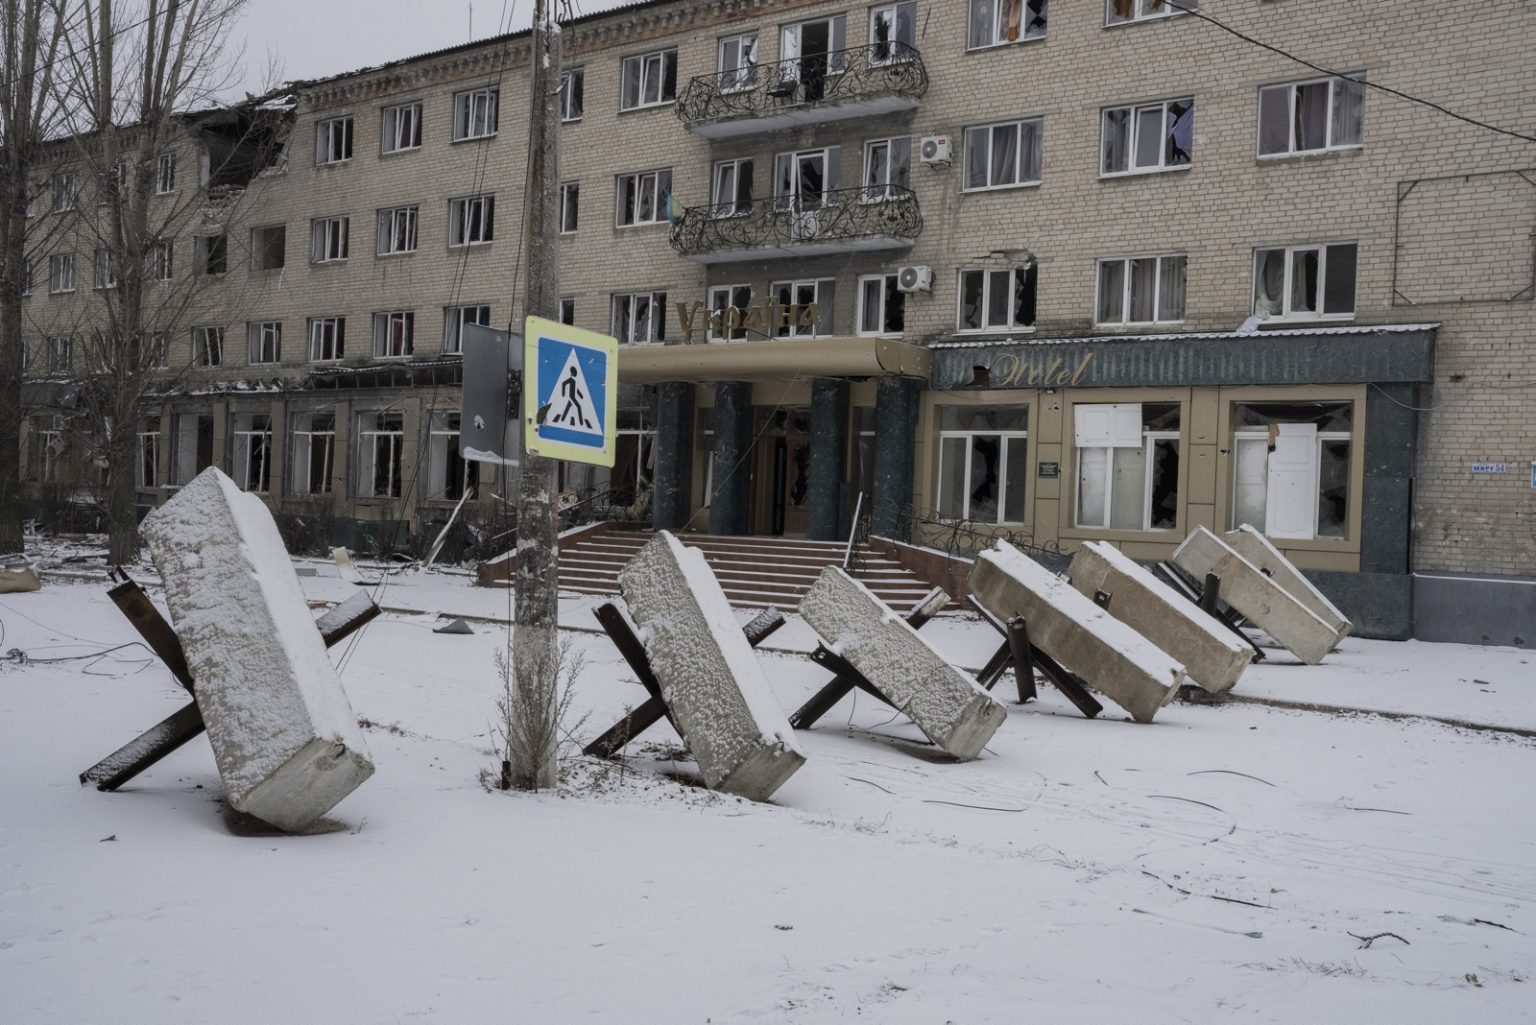 UKRAINE, Bakhmut. January 29, 2023 - Barricades in the center of Bakhmut. ><
UCRAINA, Bakhmut. 29 gennaio 2023 - Barricate nel centro di Bakhmut.